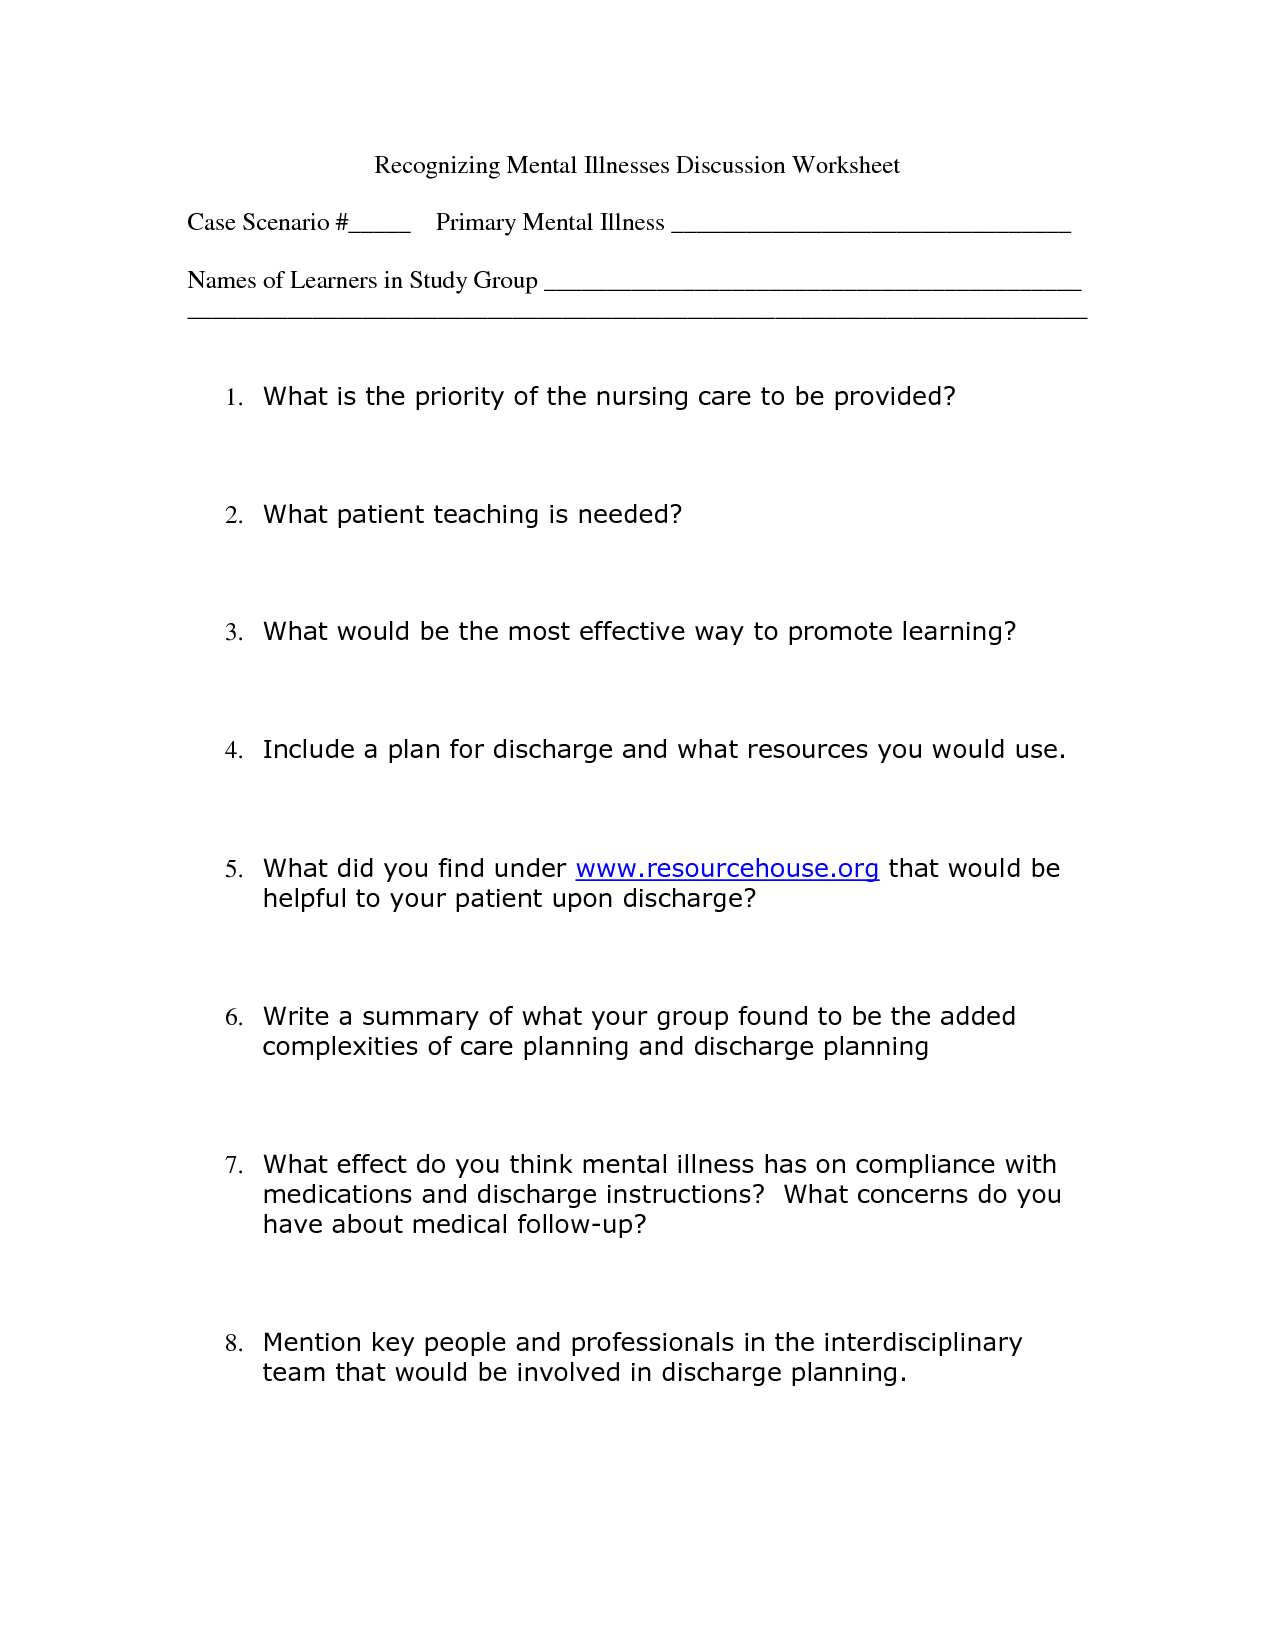 Worksheet : Free Mental Health Worksheets Davezan L For Kids - Free Printable Mental Health Worksheets